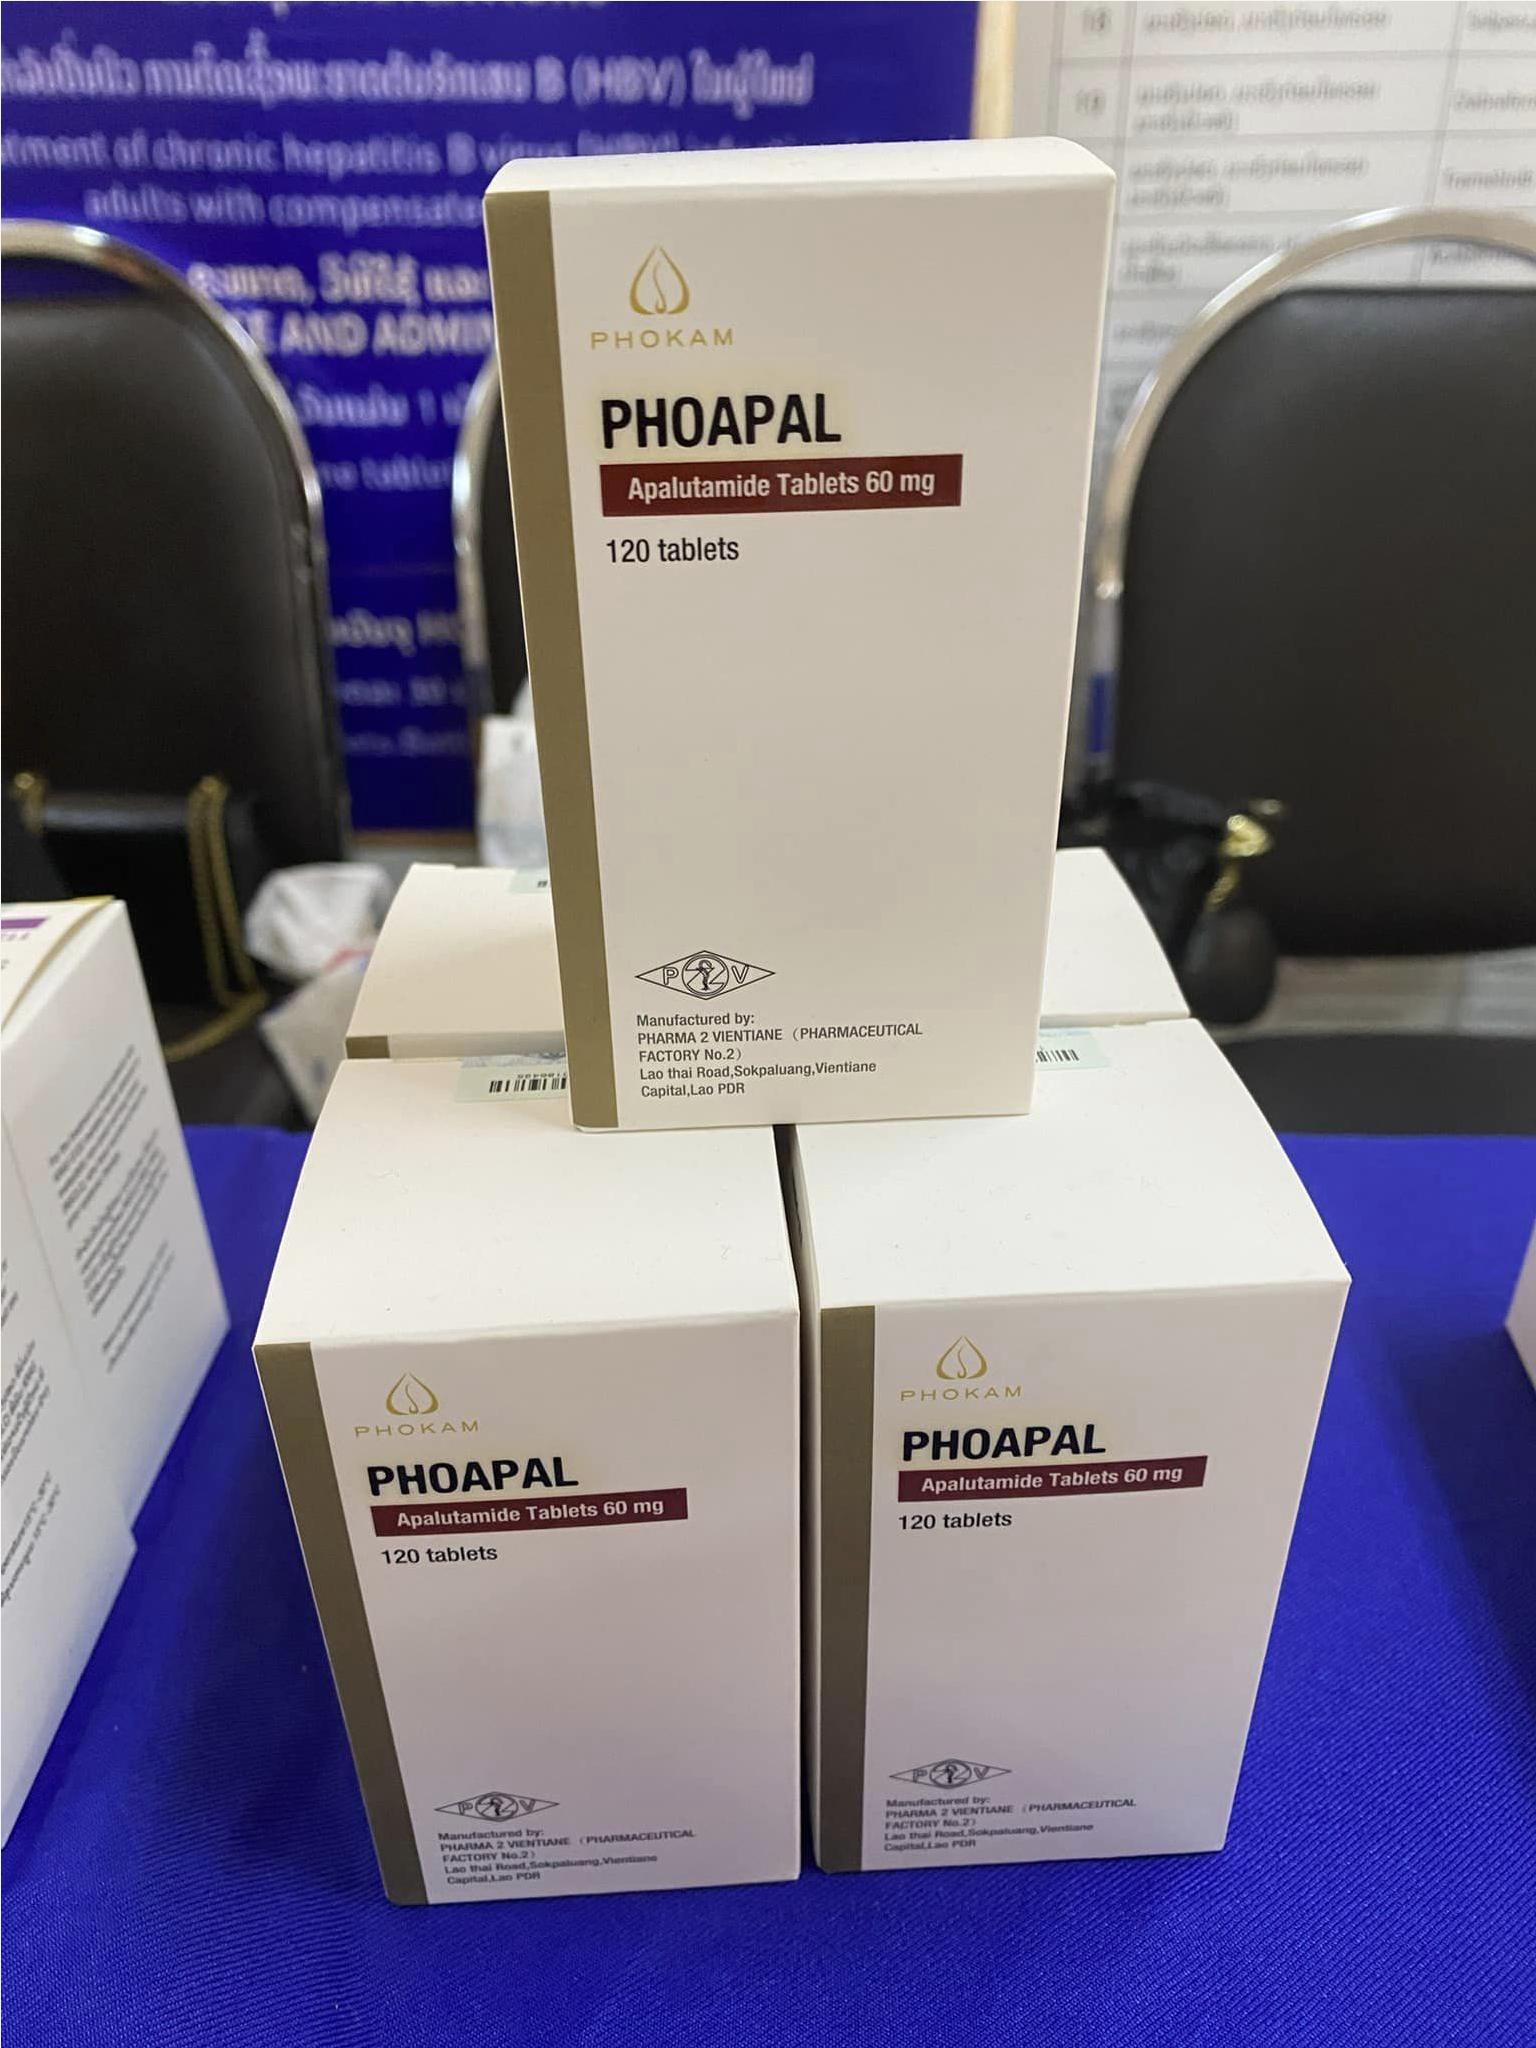 Thuốc Phoapal Apalutamide 60mg giá bao nhiêu mua ở đâu?